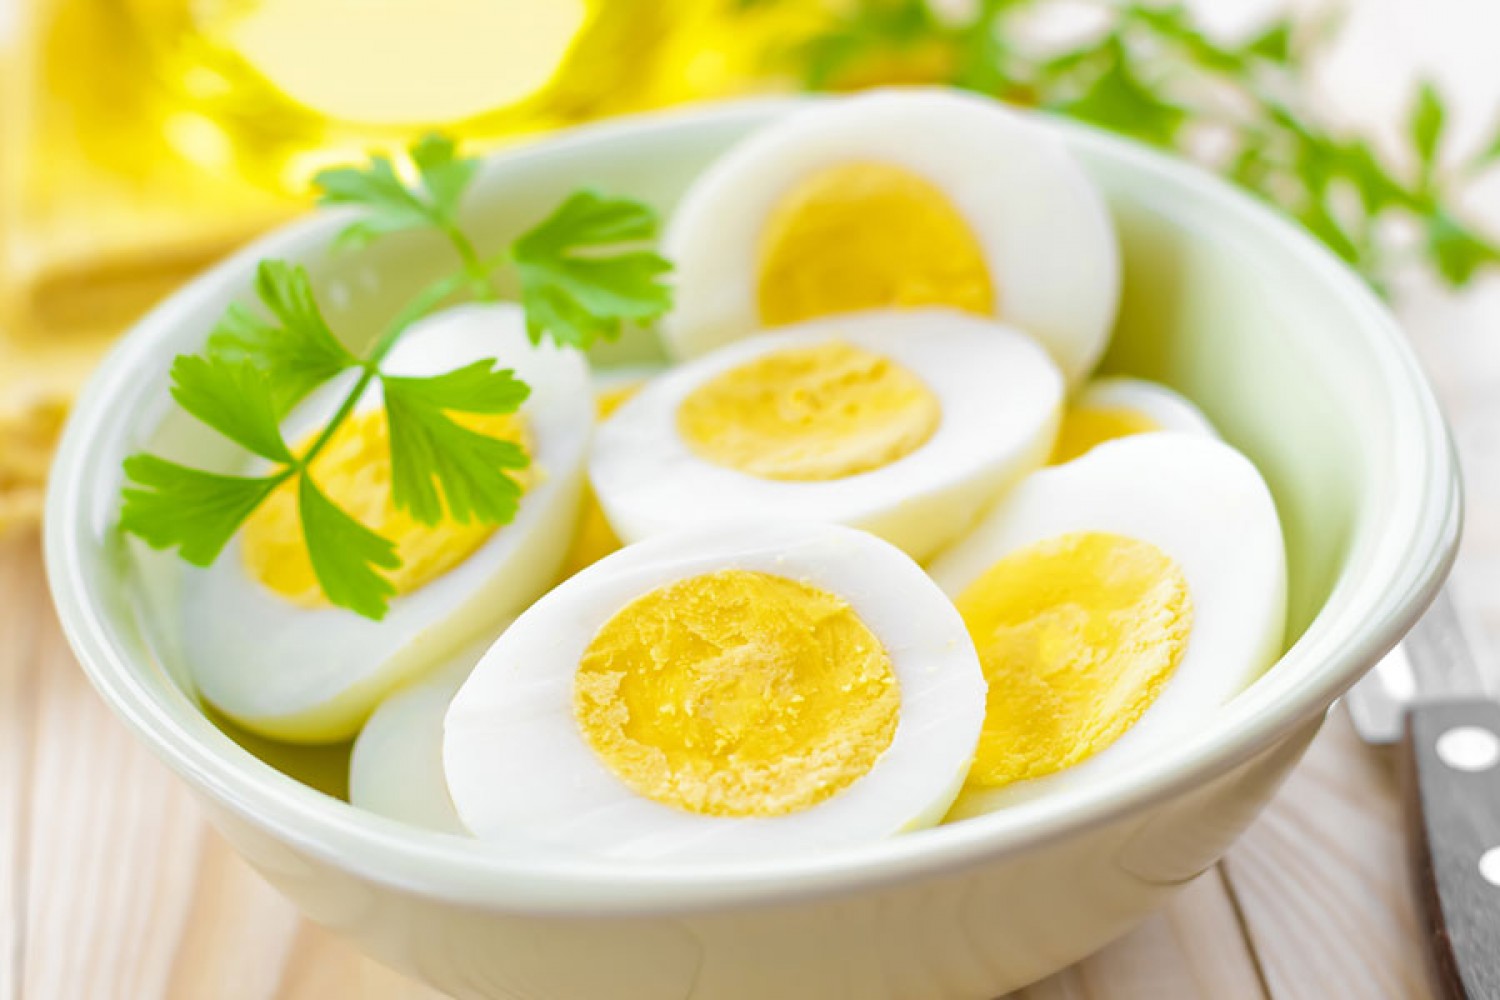 كم بيضة يسمح بتناولها أسبوعيا؟ Image